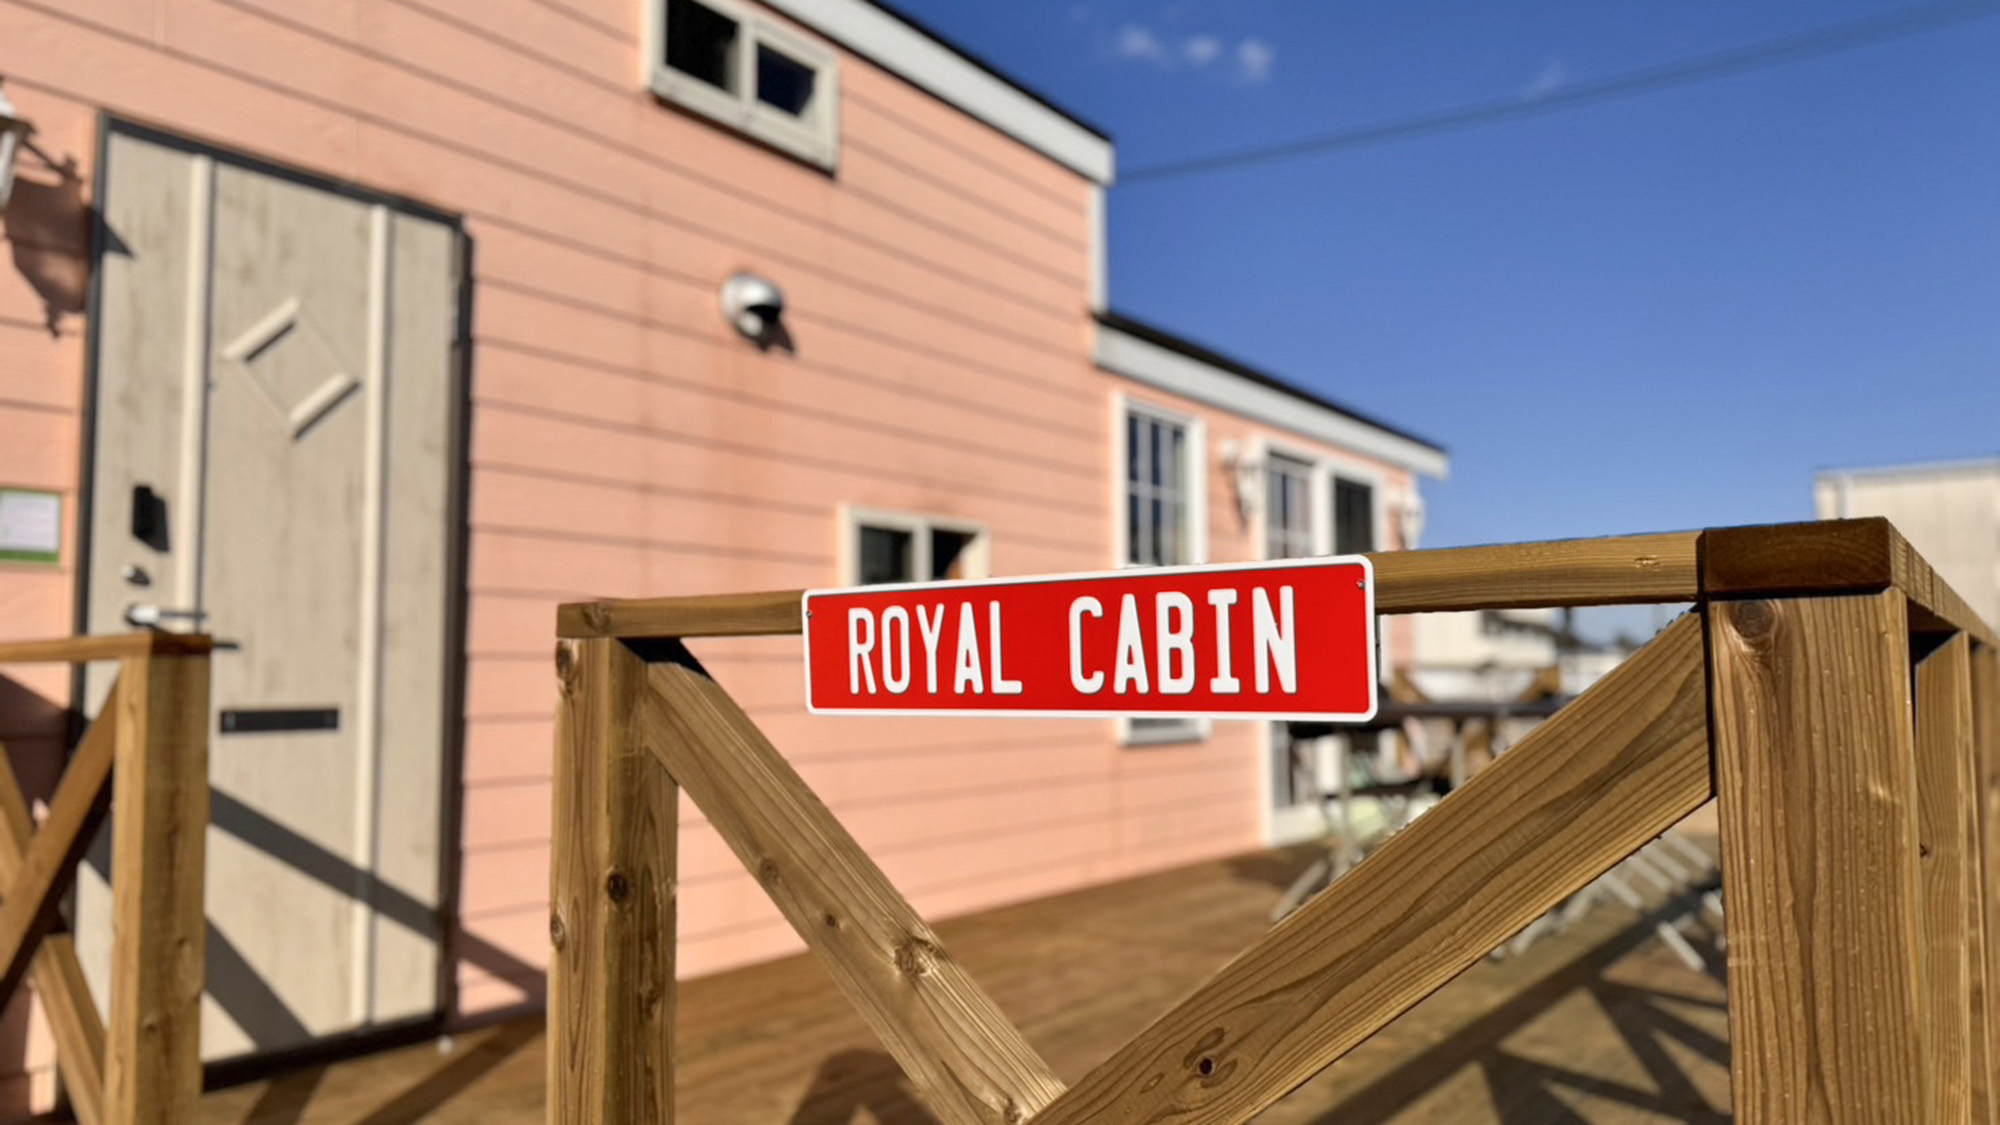 ・【ROYAL Cabin】赤いルームサインを目印にお越しください